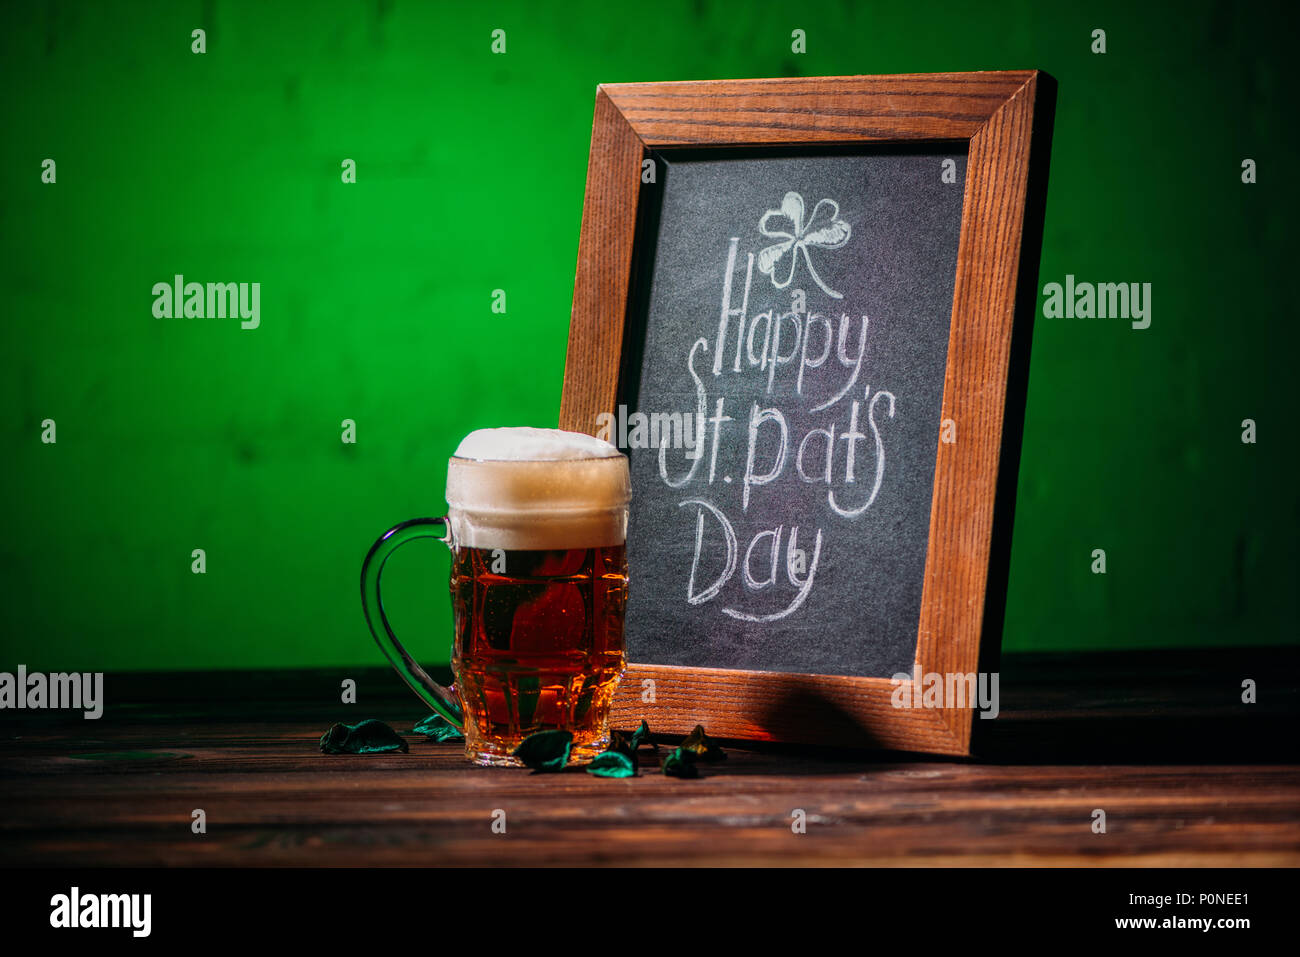 Holzrahmen mit Happy st patricks day Inschrift und Glas Bier auf Tisch Stockfoto